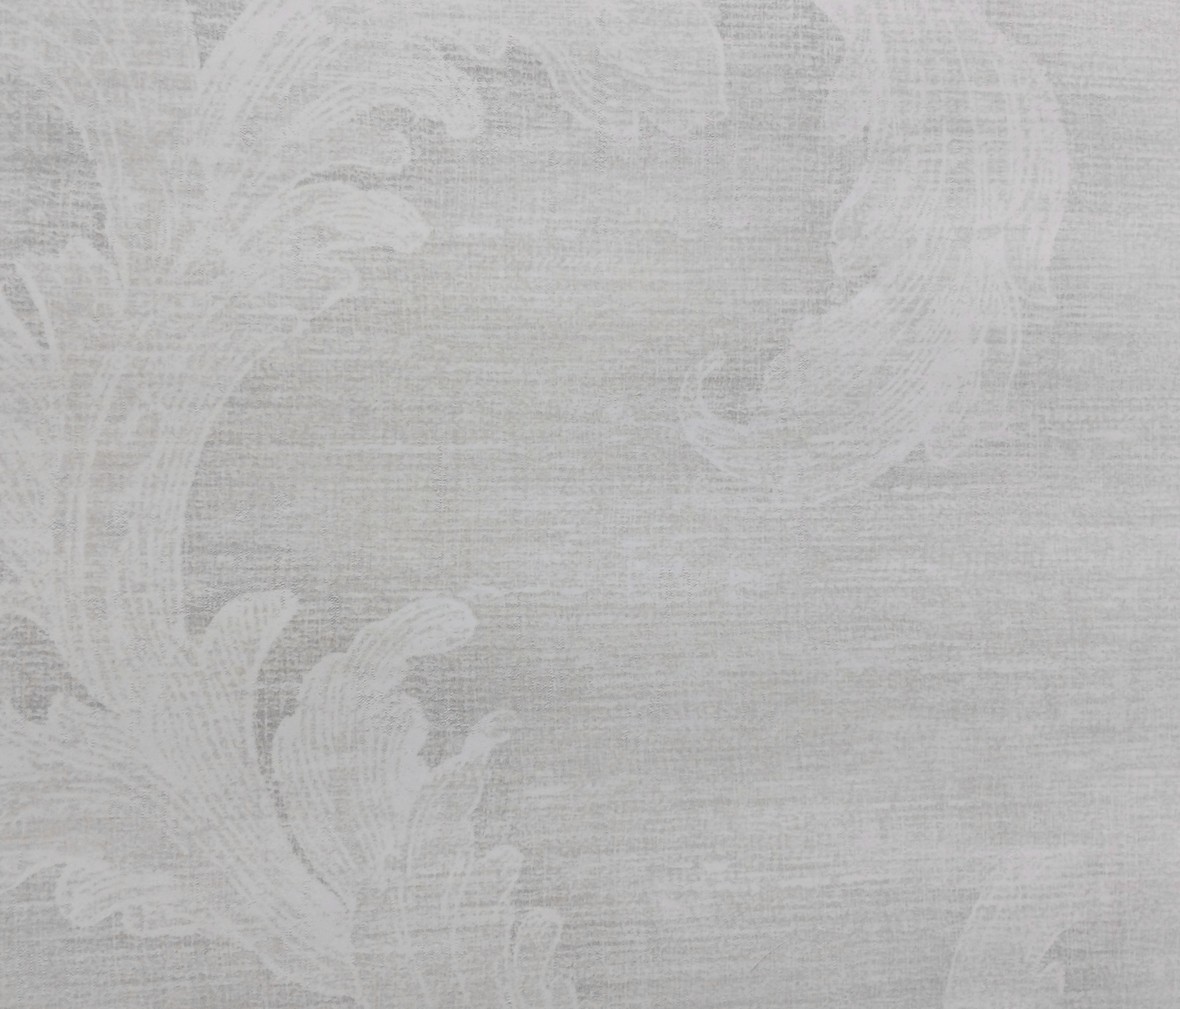 格莱美壁纸 米尔顿系列BE71009型号壁纸 进口环保纯纸墙纸 细节展示